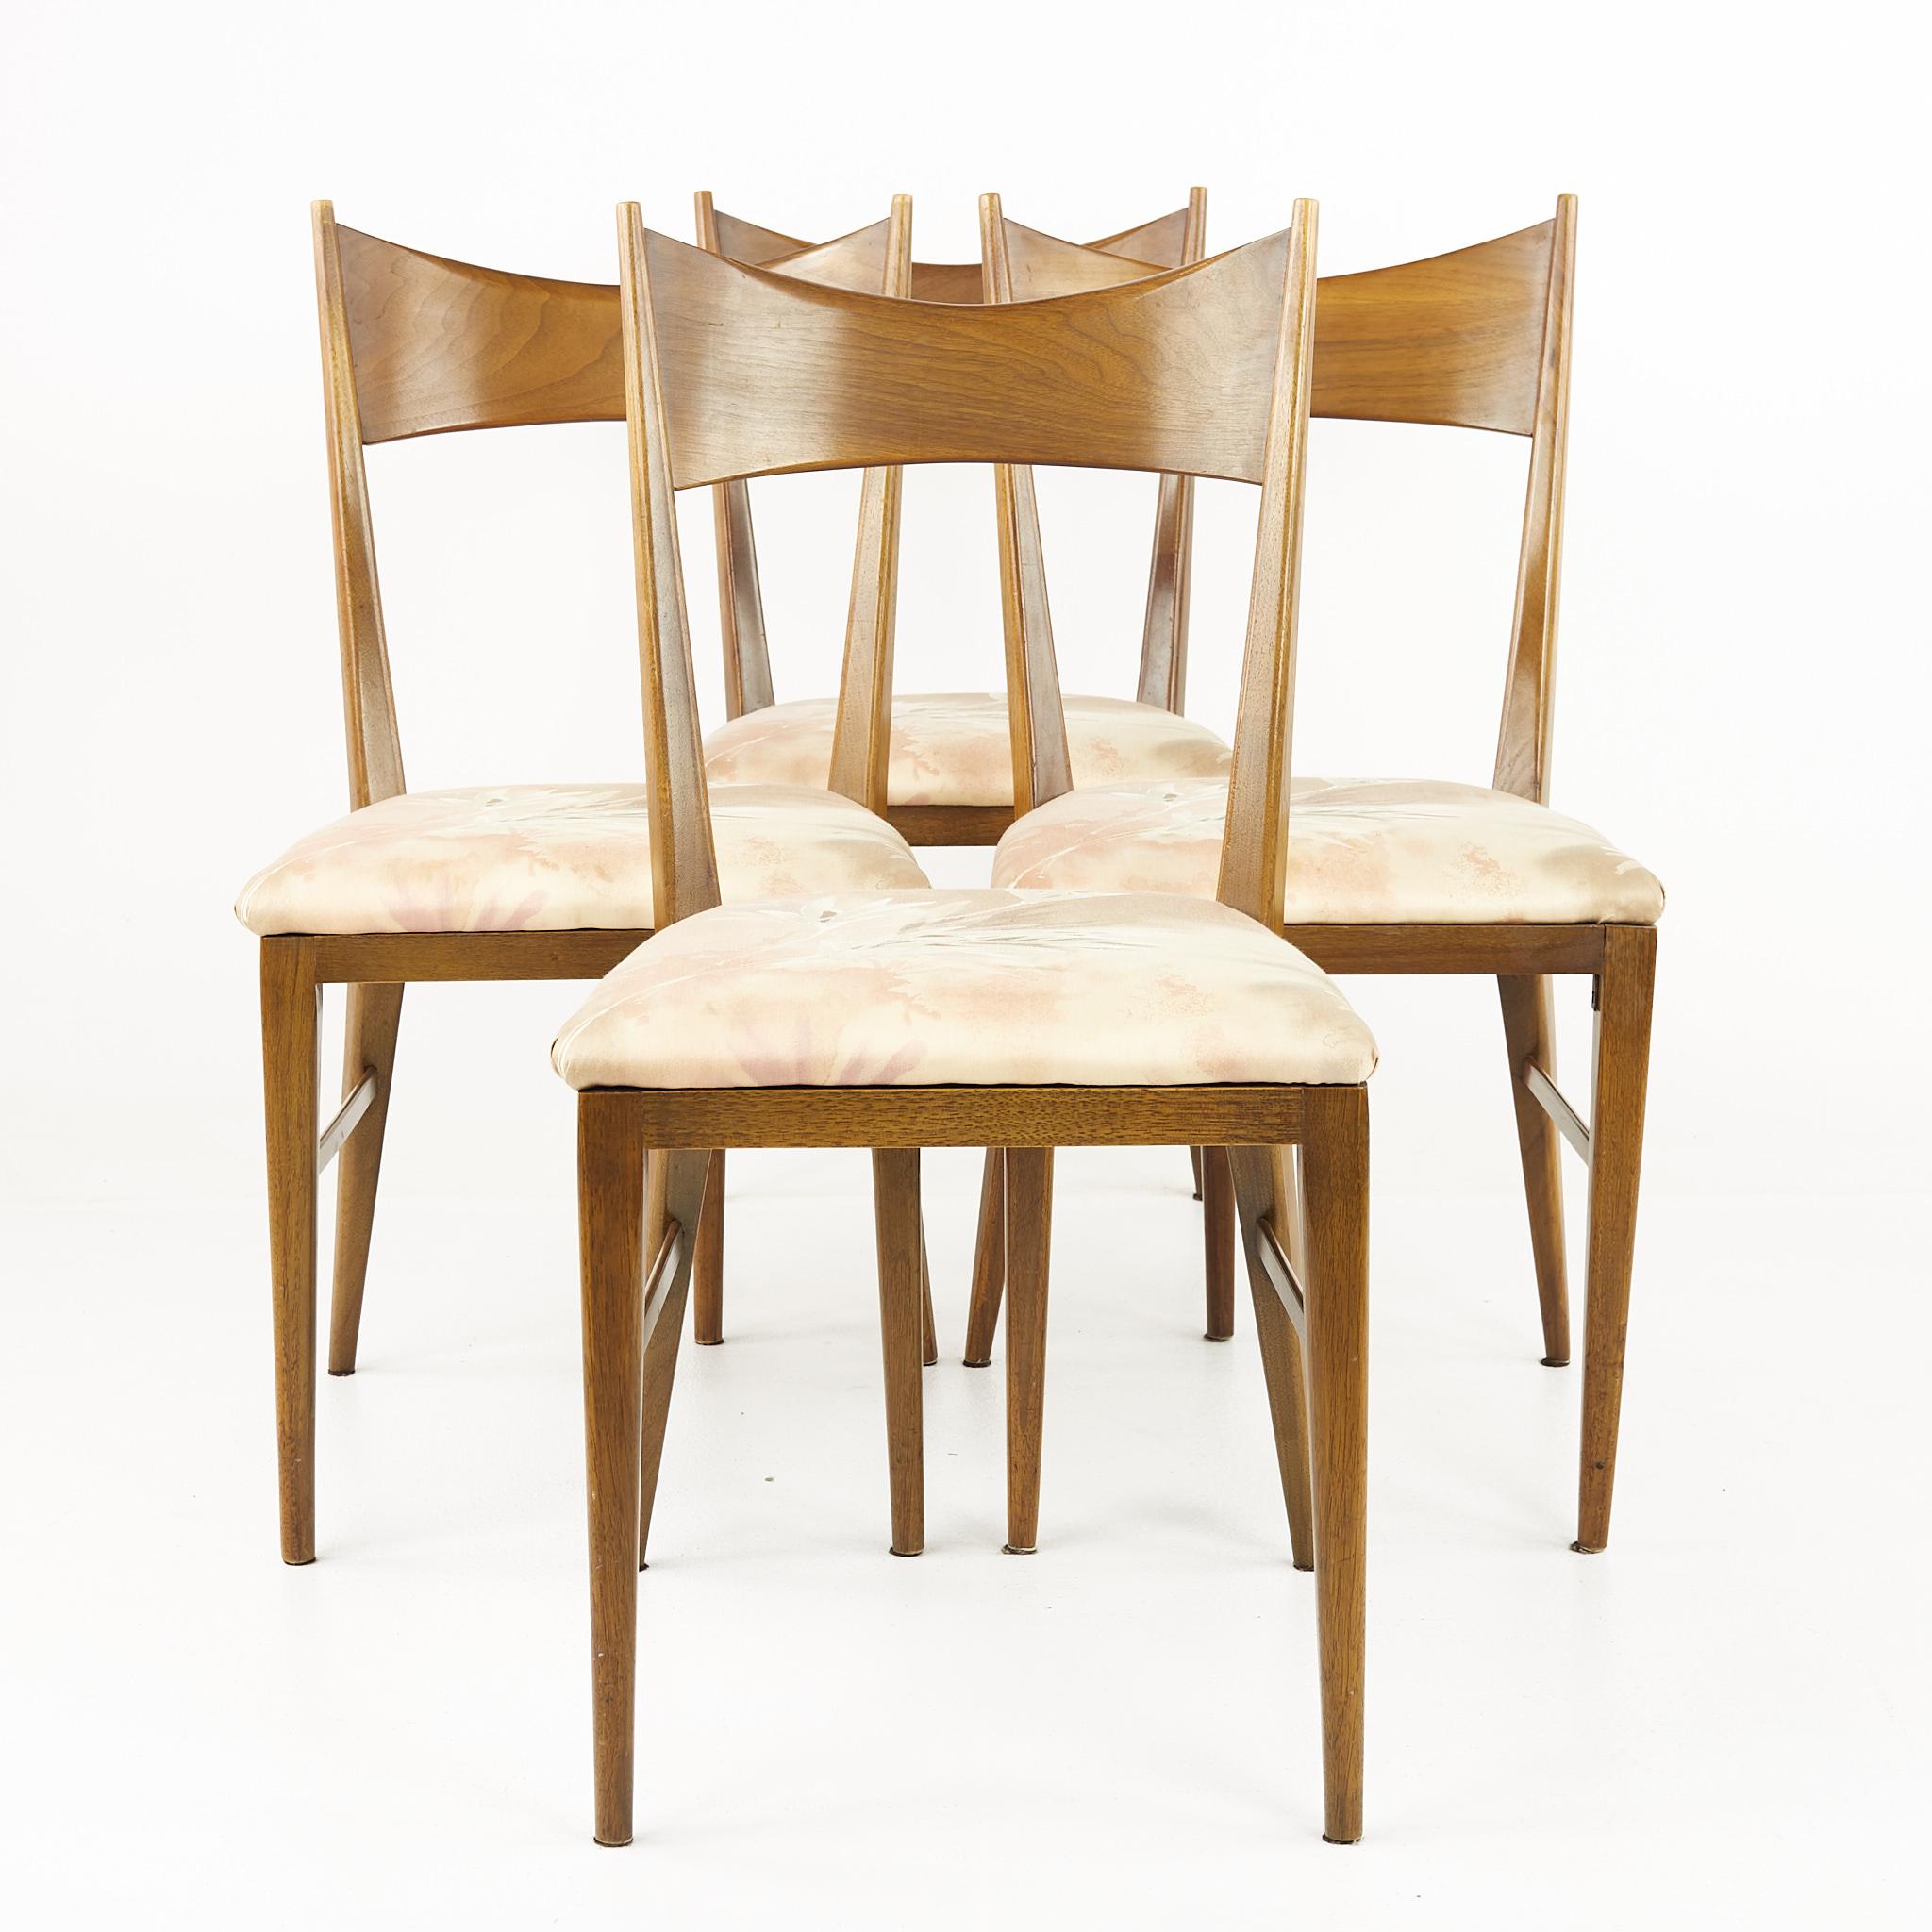 Paul McCobb for Calvin chaises de salle à manger du milieu du siècle - Set of 4

Chaque chaise mesure : 17.5 de large x 18 de profond x 35 de haut, avec une hauteur d'assise de 18 pouces

Tous les meubles peuvent être obtenus dans ce que nous